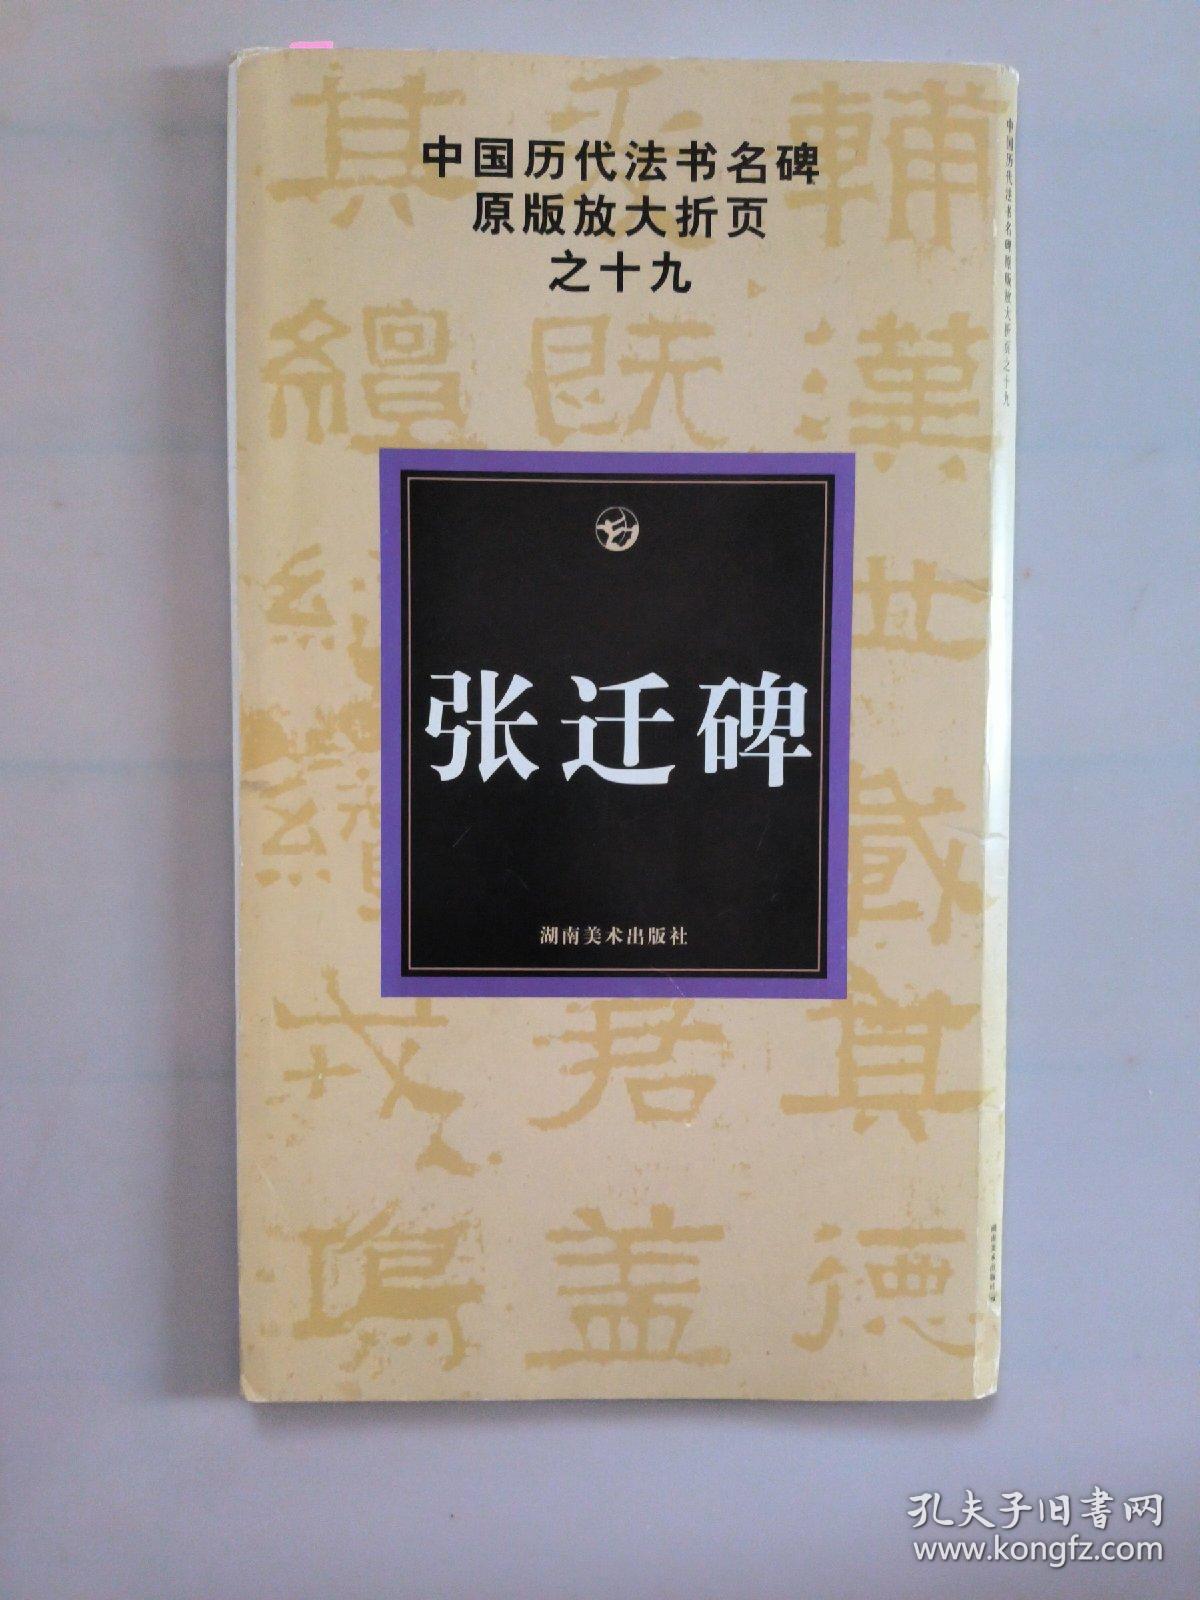 中国历代法书名碑原版放大折页之19：张迁碑